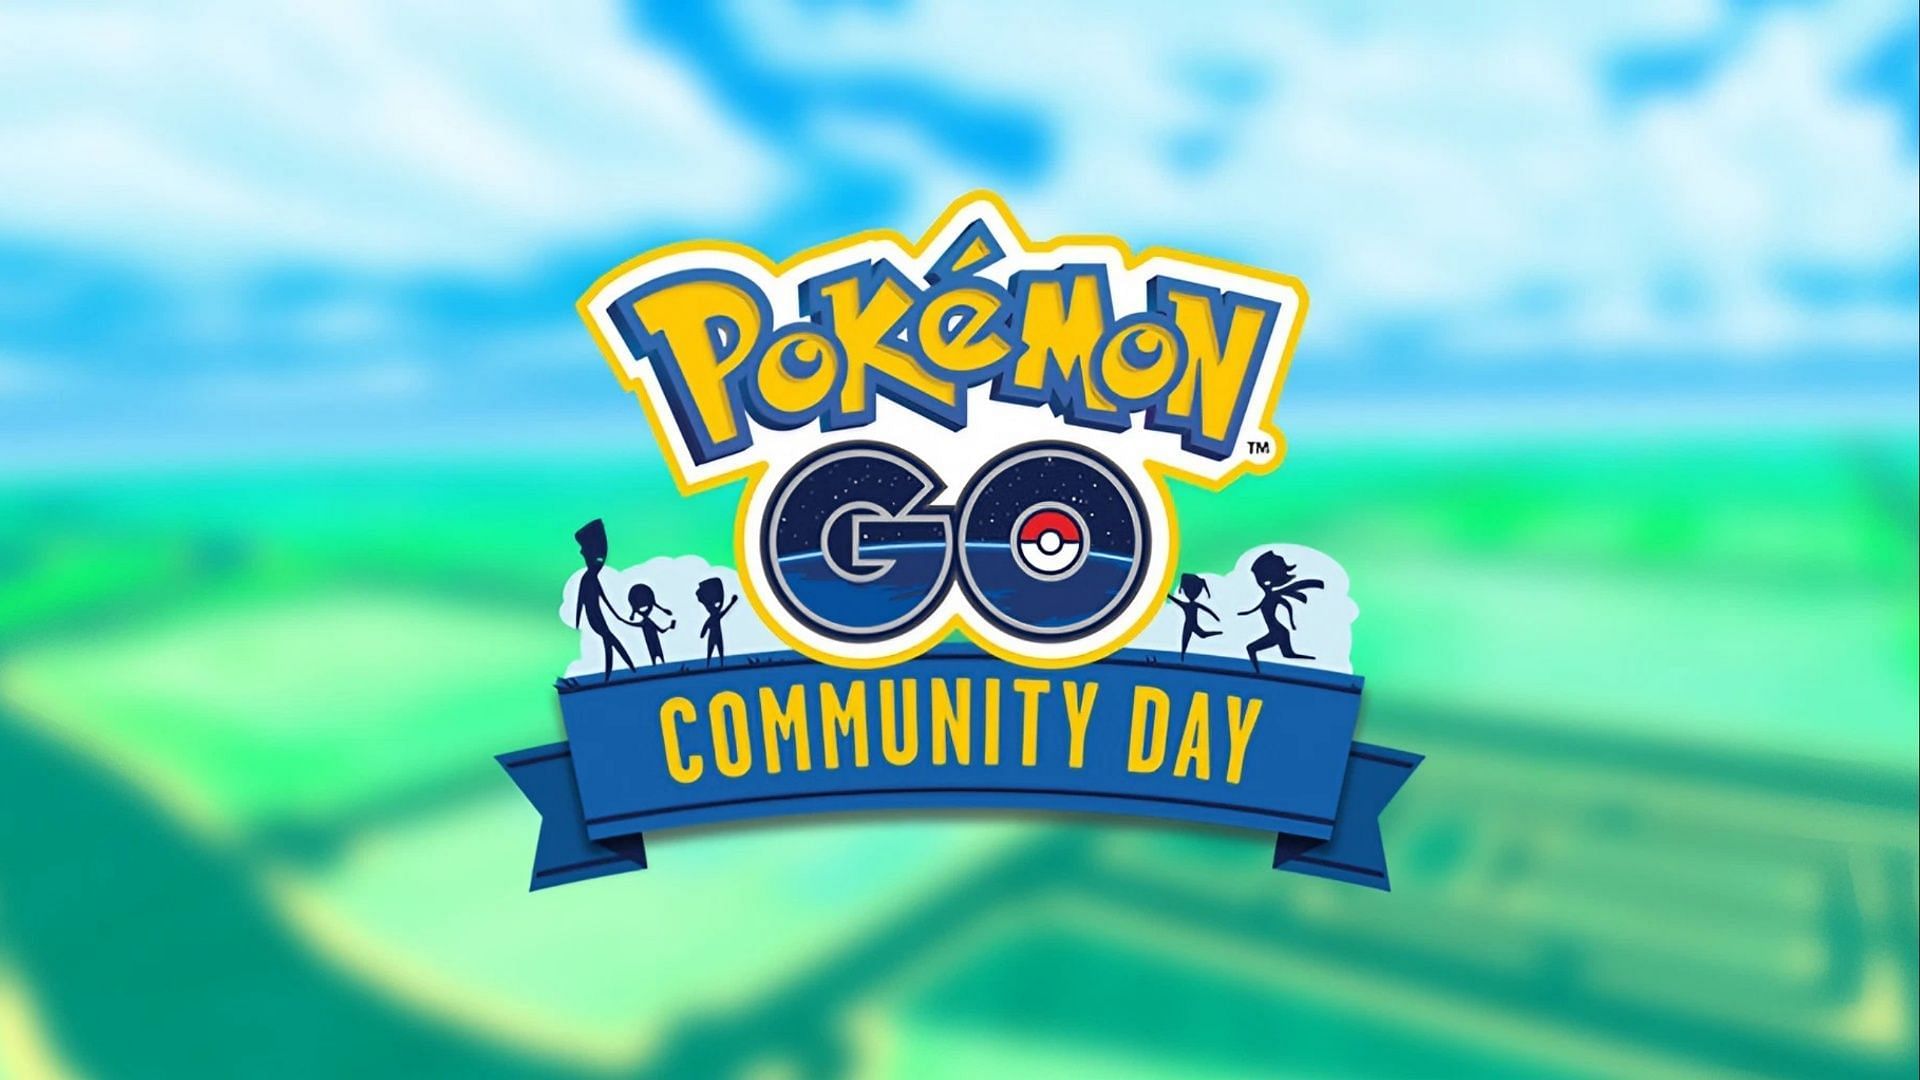 Pokemon GO Community Day dates